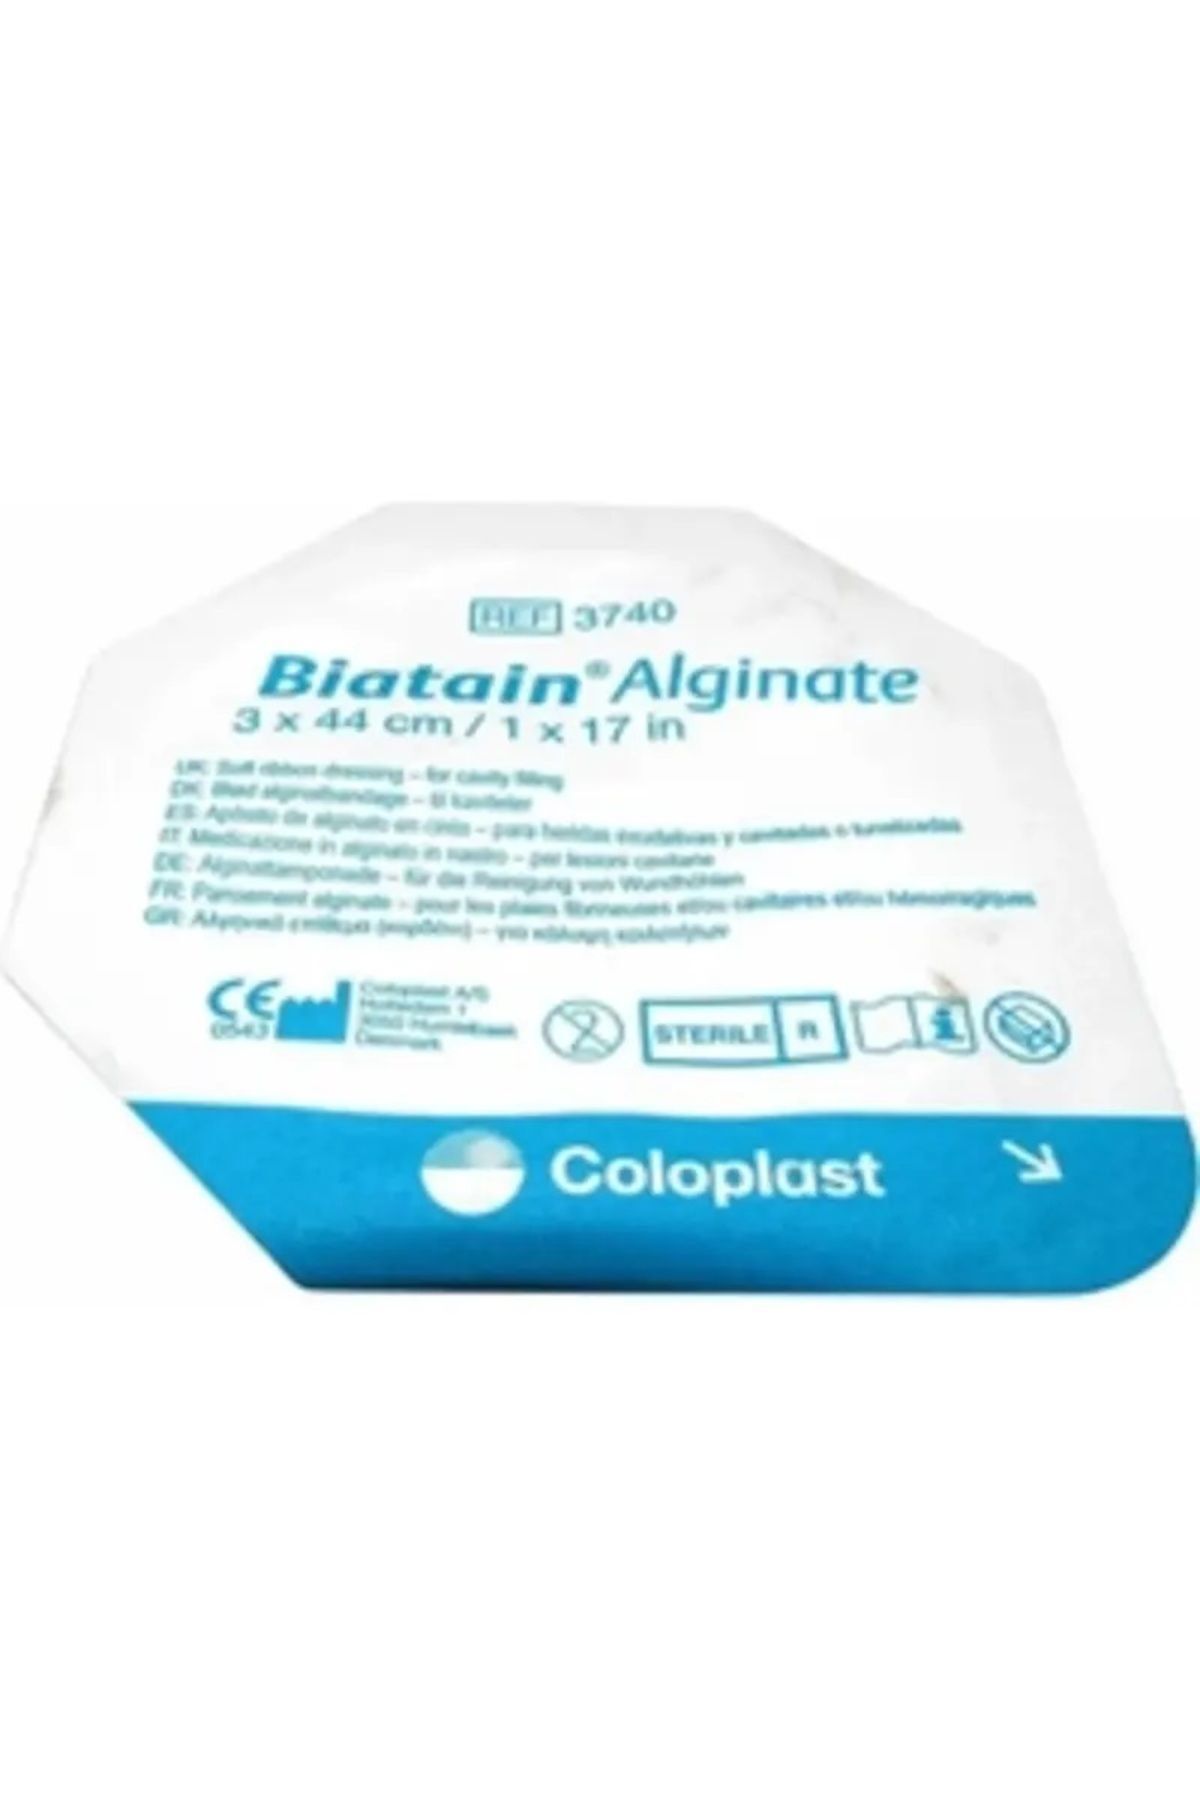 Coloplast Biatain Yumuşak Alginate Şerit Yara Örtüsü 3x44 Cm (6 ADET) (3740 )